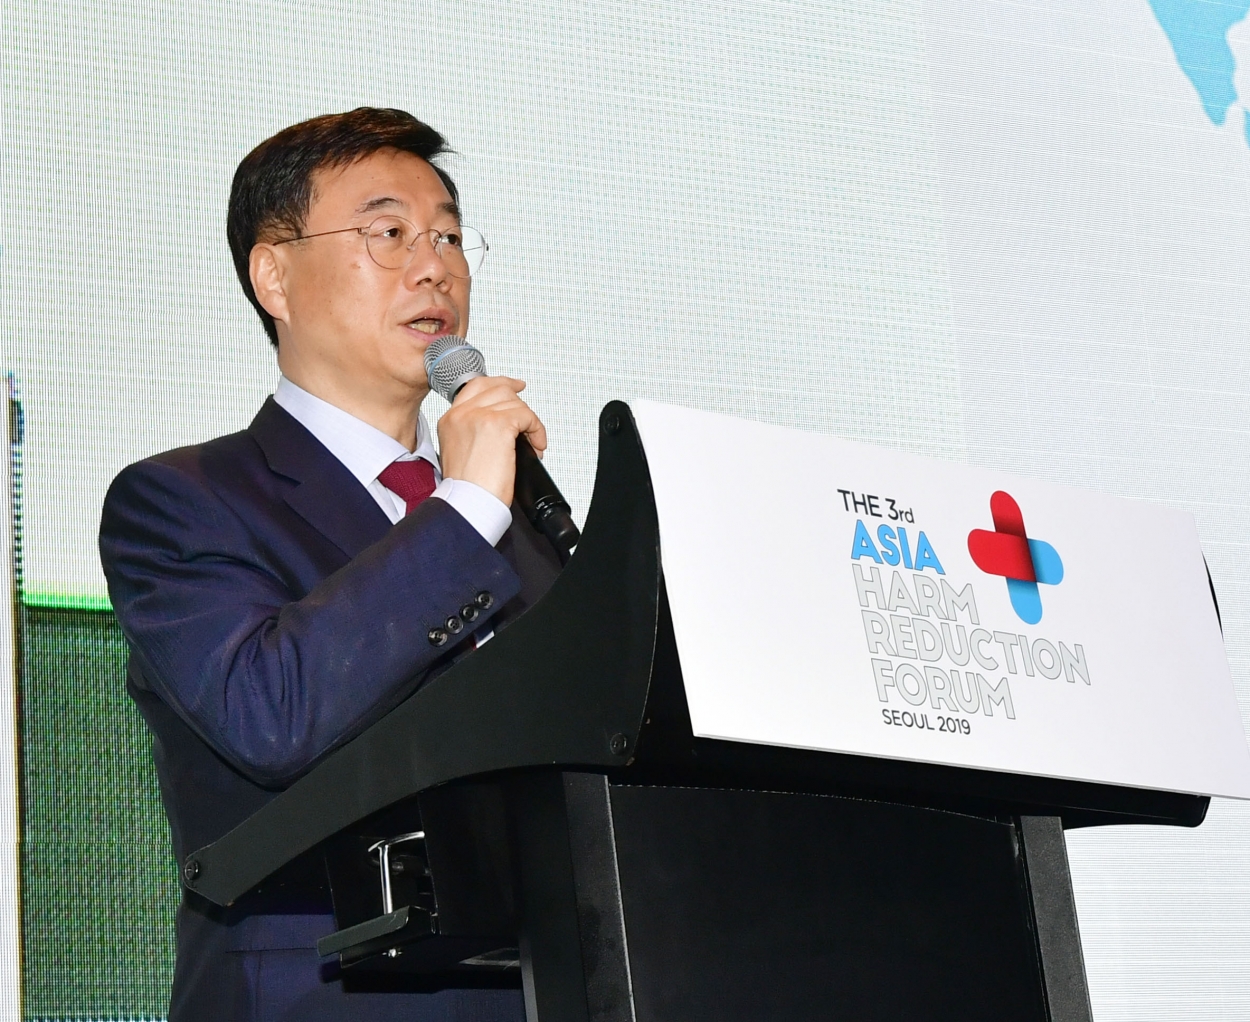 Ngài Sang Jin Shin - Thành viên Ủy ban An Sinh, Sức khỏe, cựu Chủ tịch Hiệp hội Y Khoa Hàn Quốc, Thành viên Quốc hội Đảng Tự do Hàn Quốc bày tỏ sự phấn khởi và kỳ vọng với diễn đàn lần này.